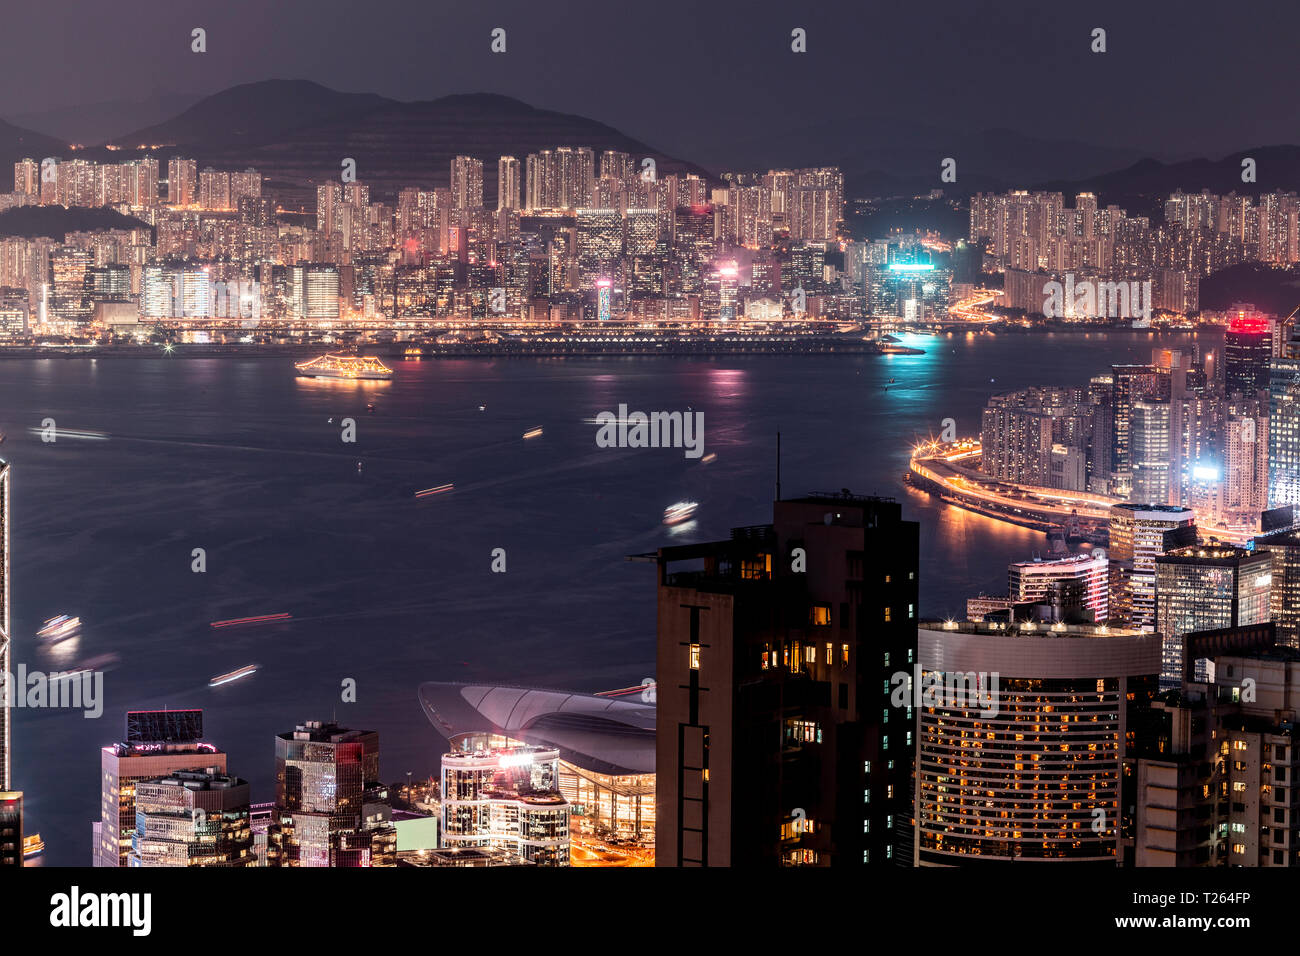 Hong Kong, Causeway Bay, cityscape at night Stock Photo